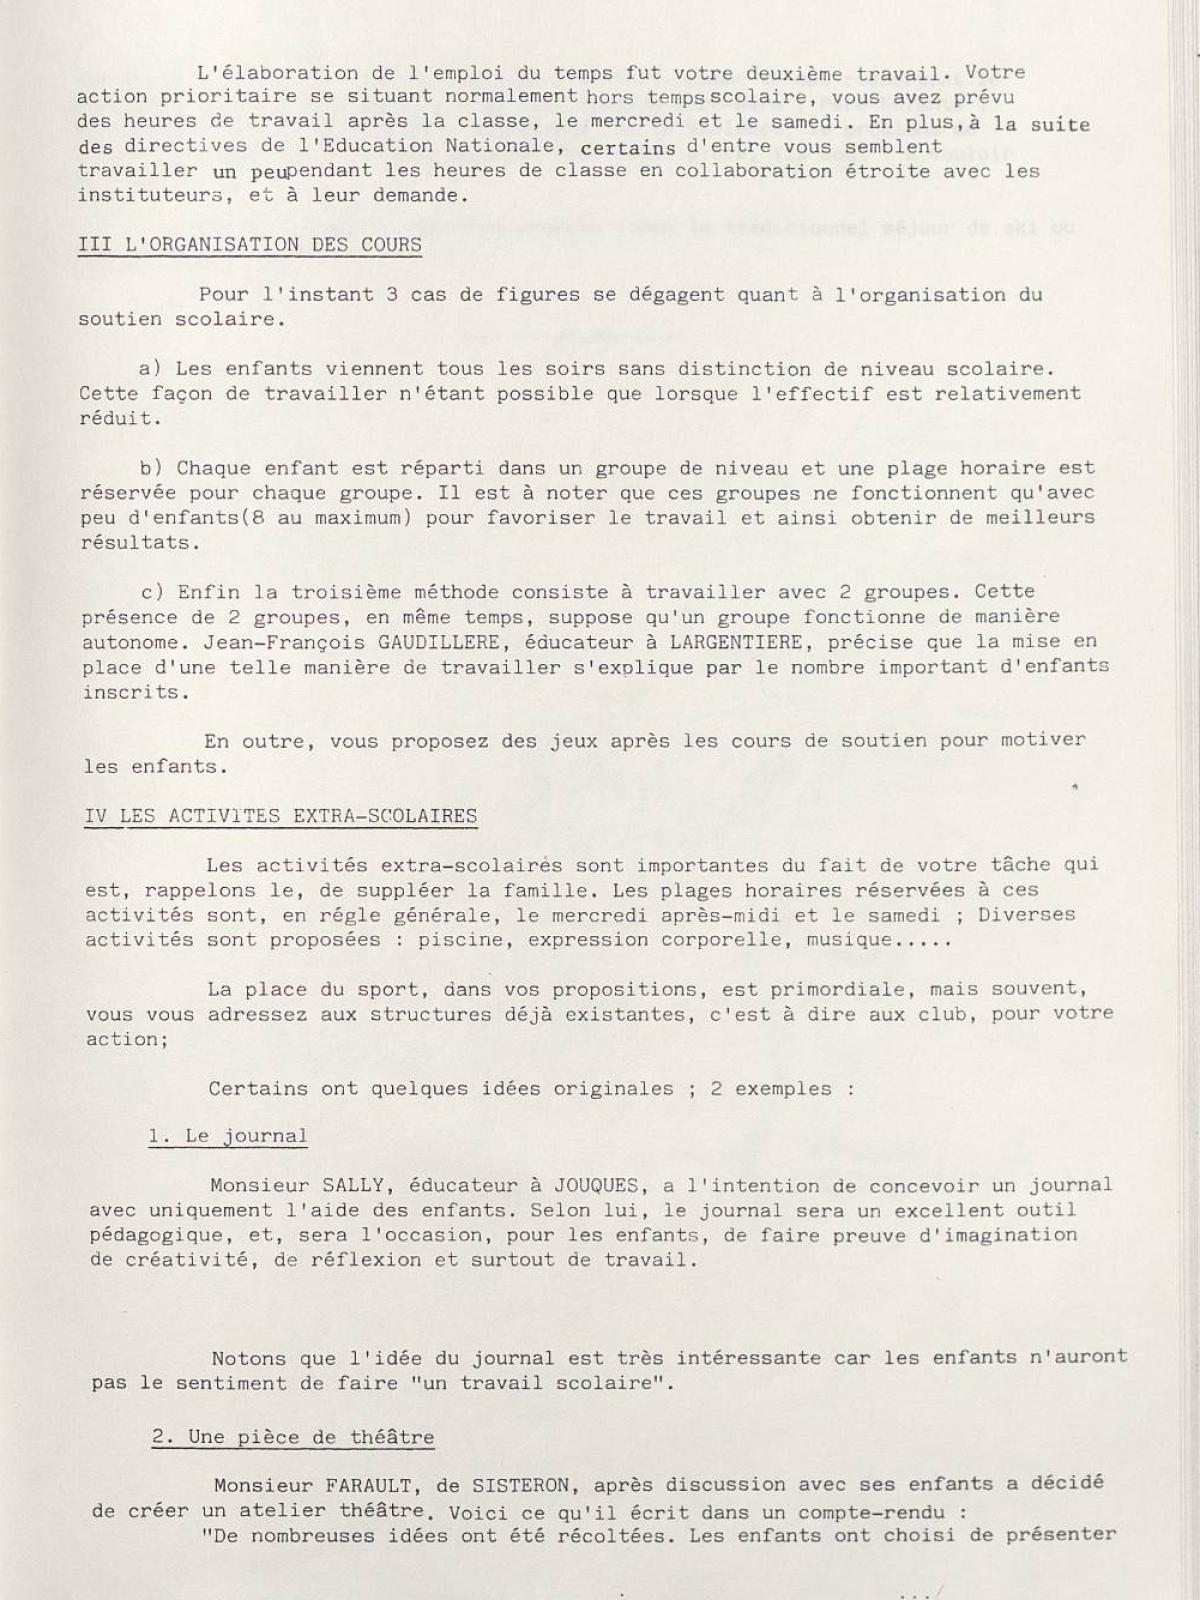 Illustration 19 : Bulletin de liaison des éducateurs (BLÉ) n°1, 15 septembre 1983 (Archives nationales, 19870444/8)